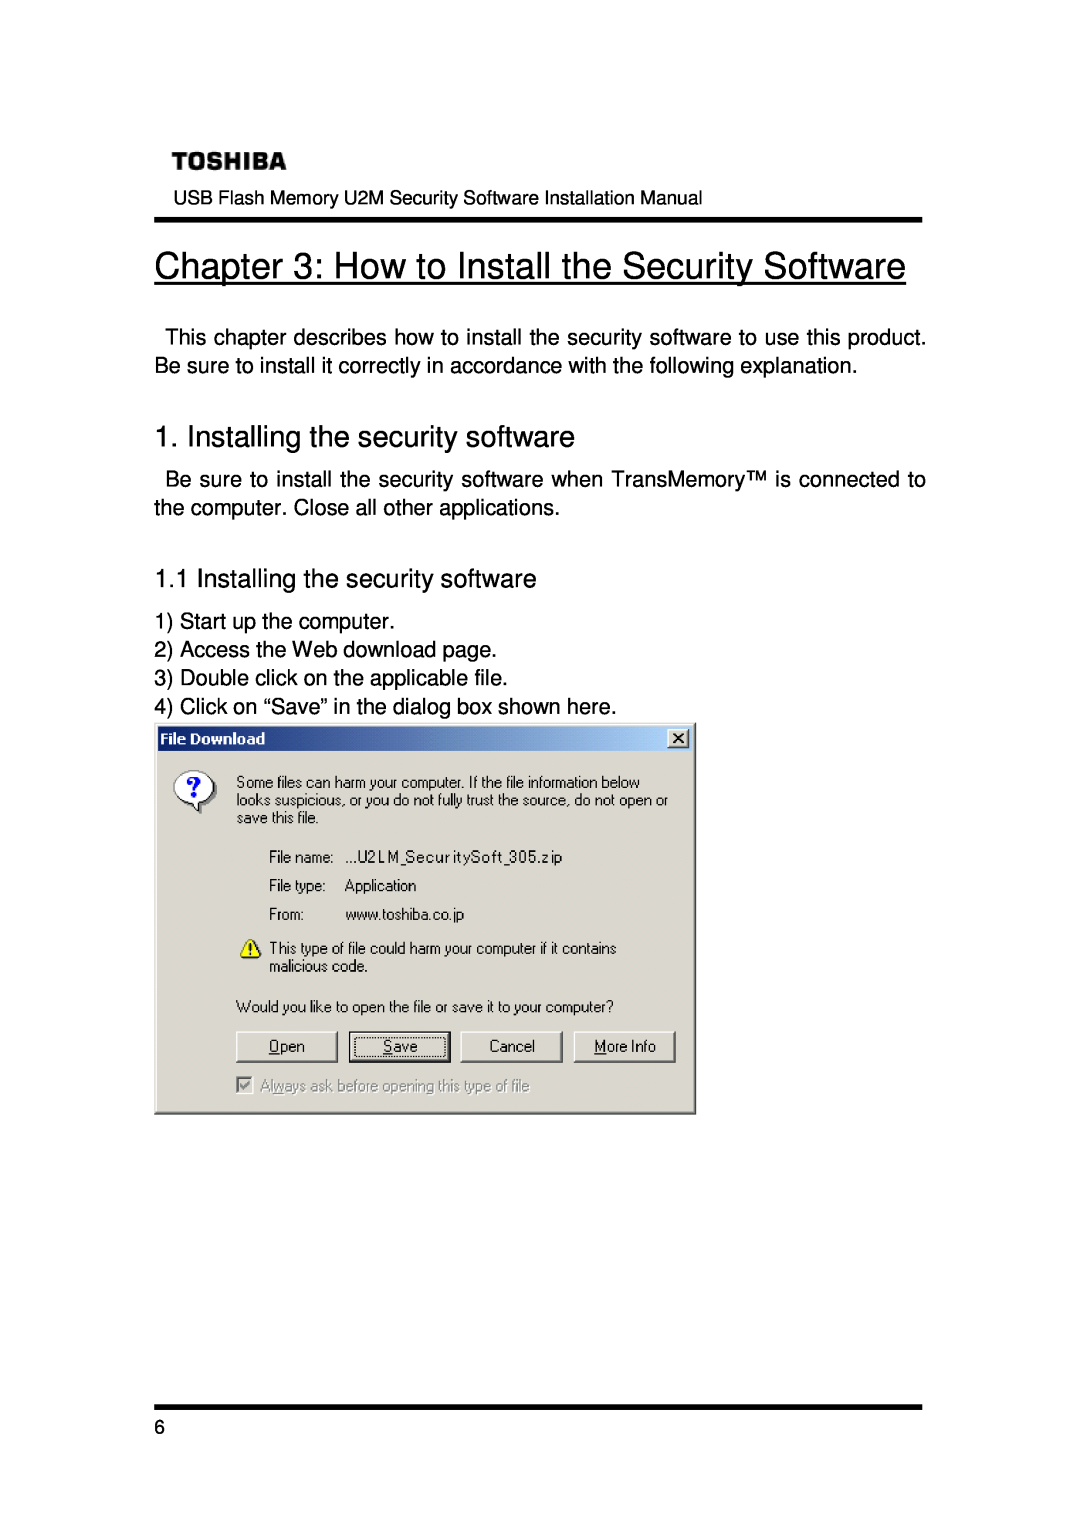 Toshiba U2M-016GT, U2M-004GT, U2M-008GT How to Install the Security Software, Installing the security software 